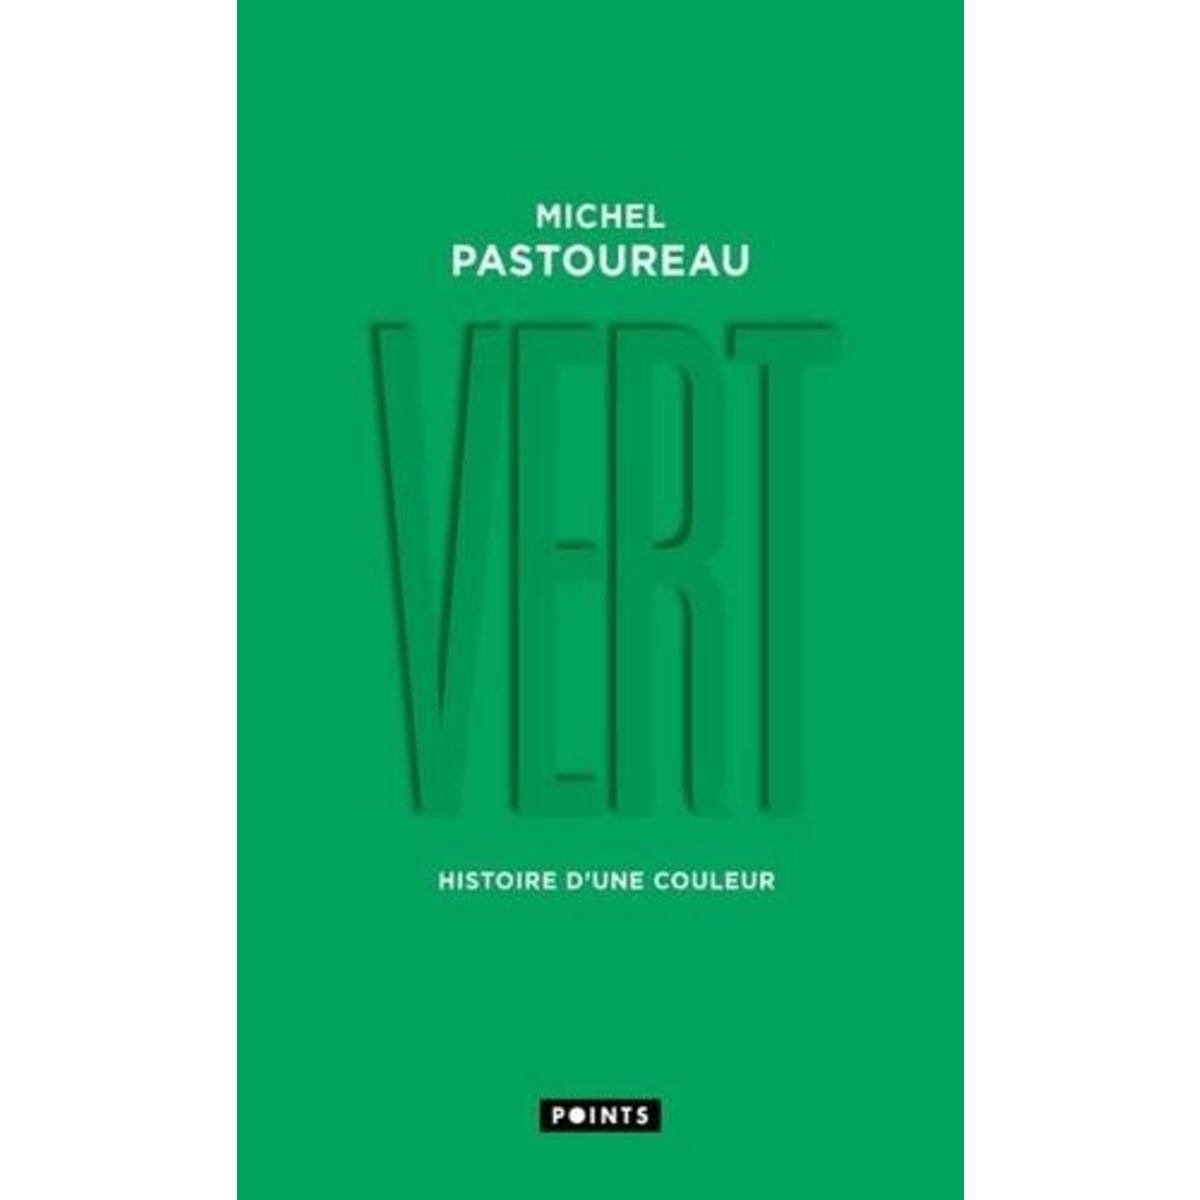  VERT. HISTOIRE D'UNE COULEUR, Pastoureau Michel